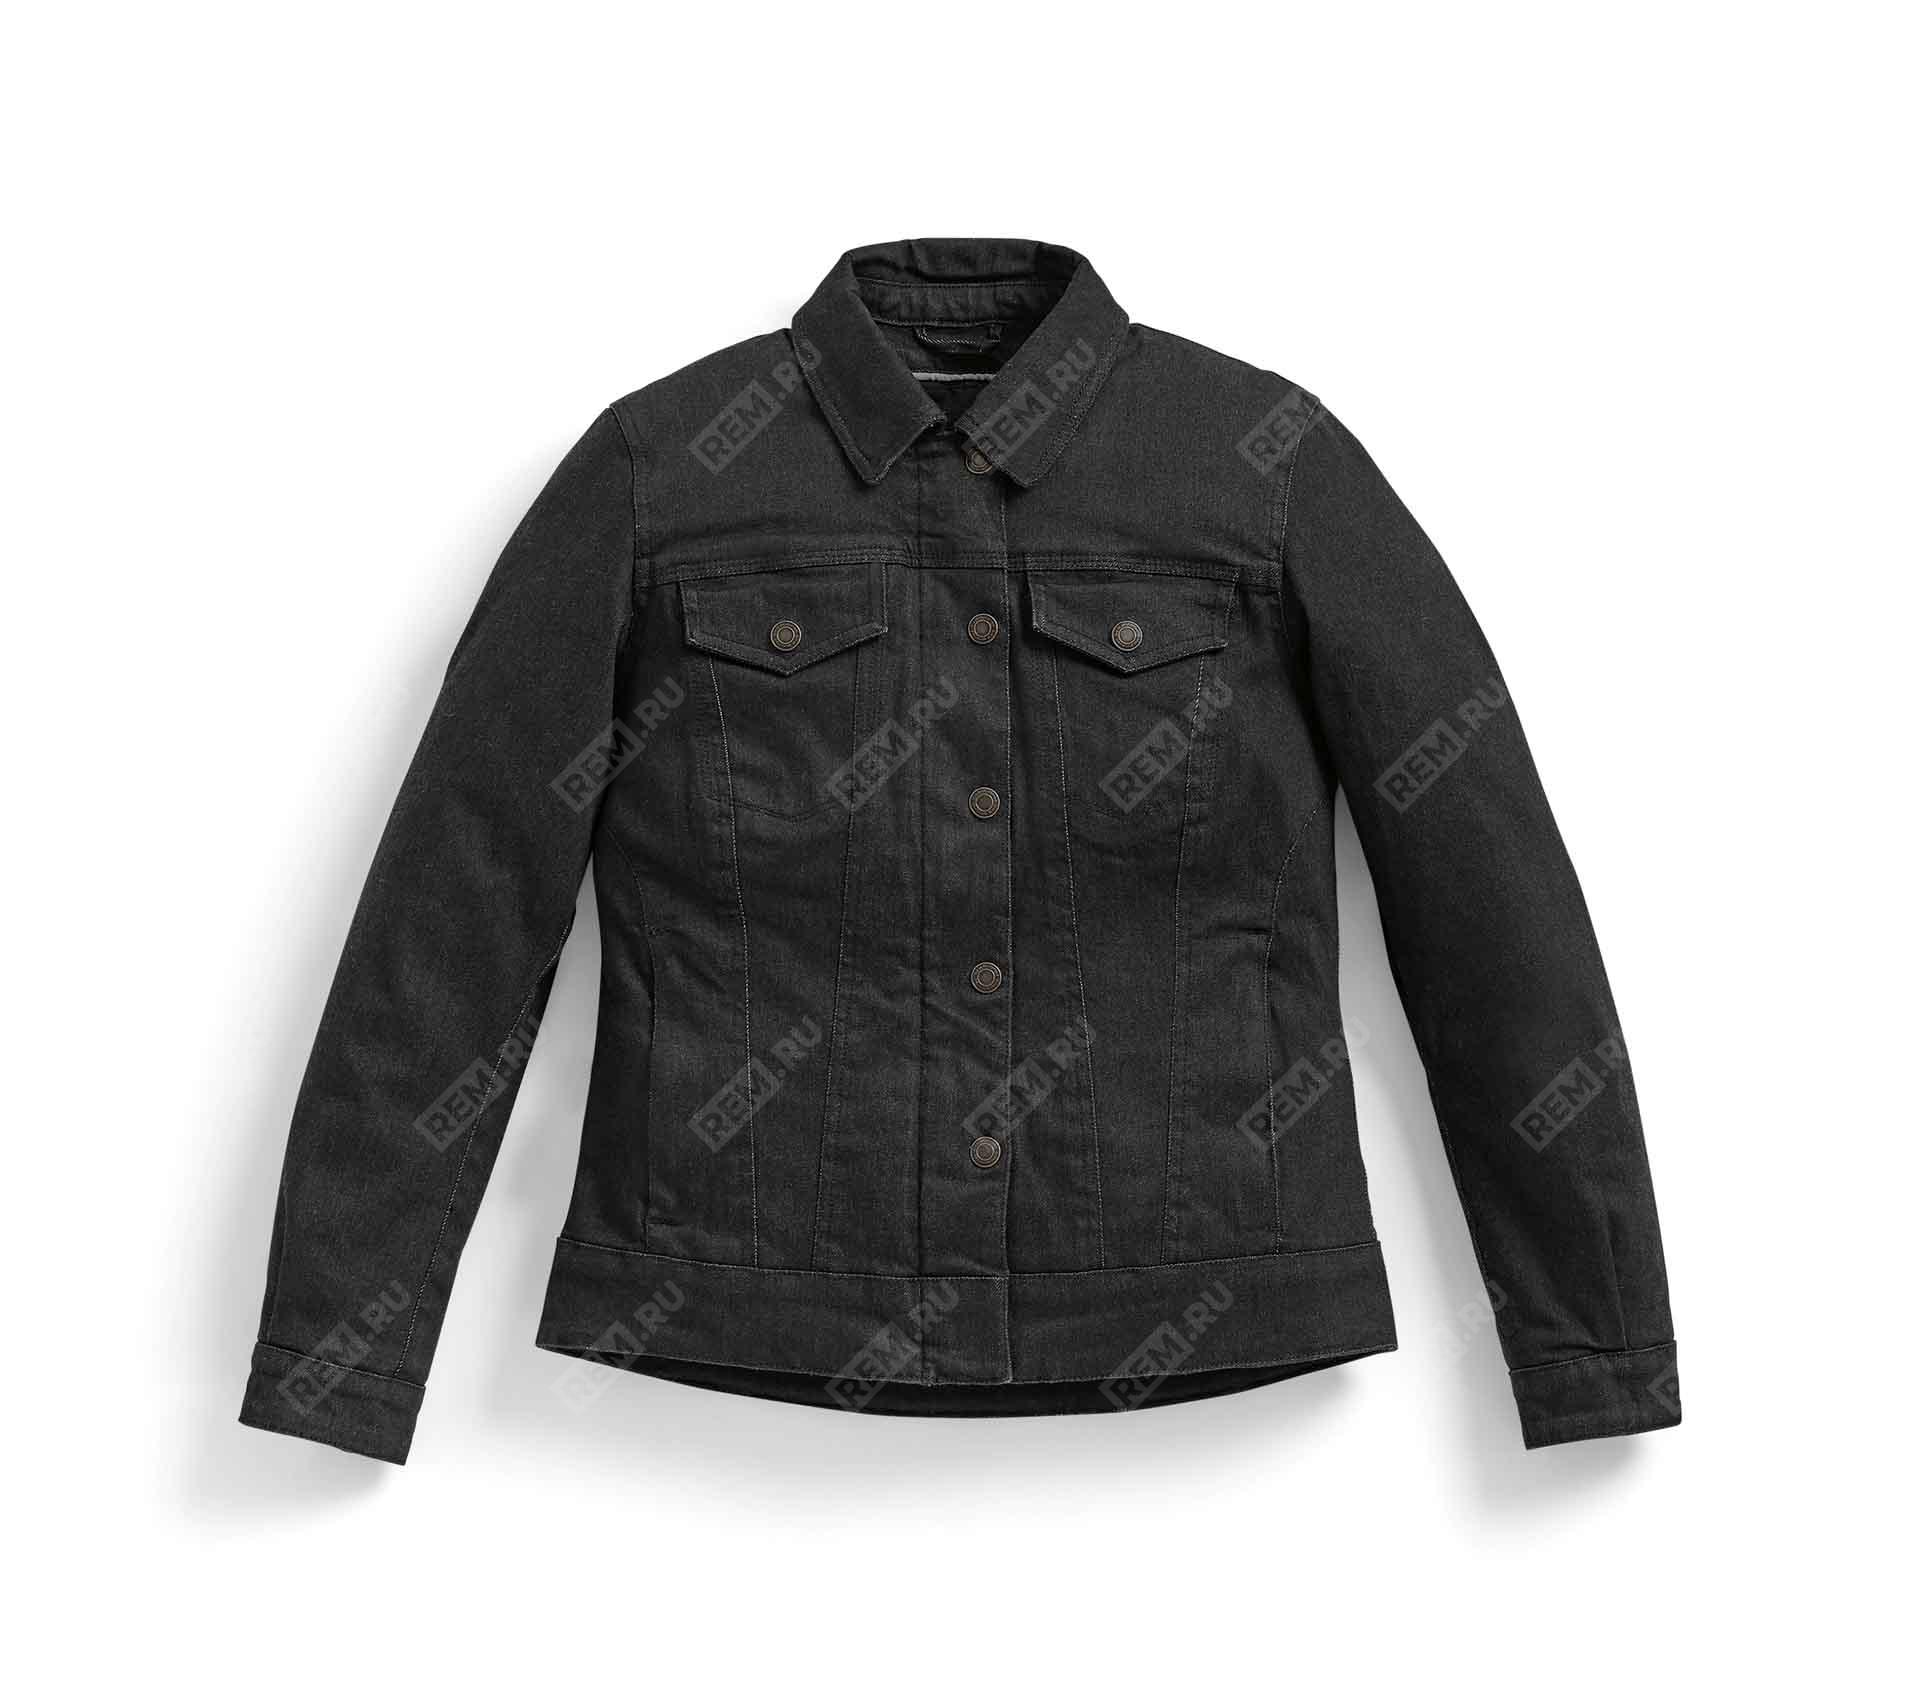  76131539846  куртка женская джинсовая roadcrafted черная, размер m   (фото 1)